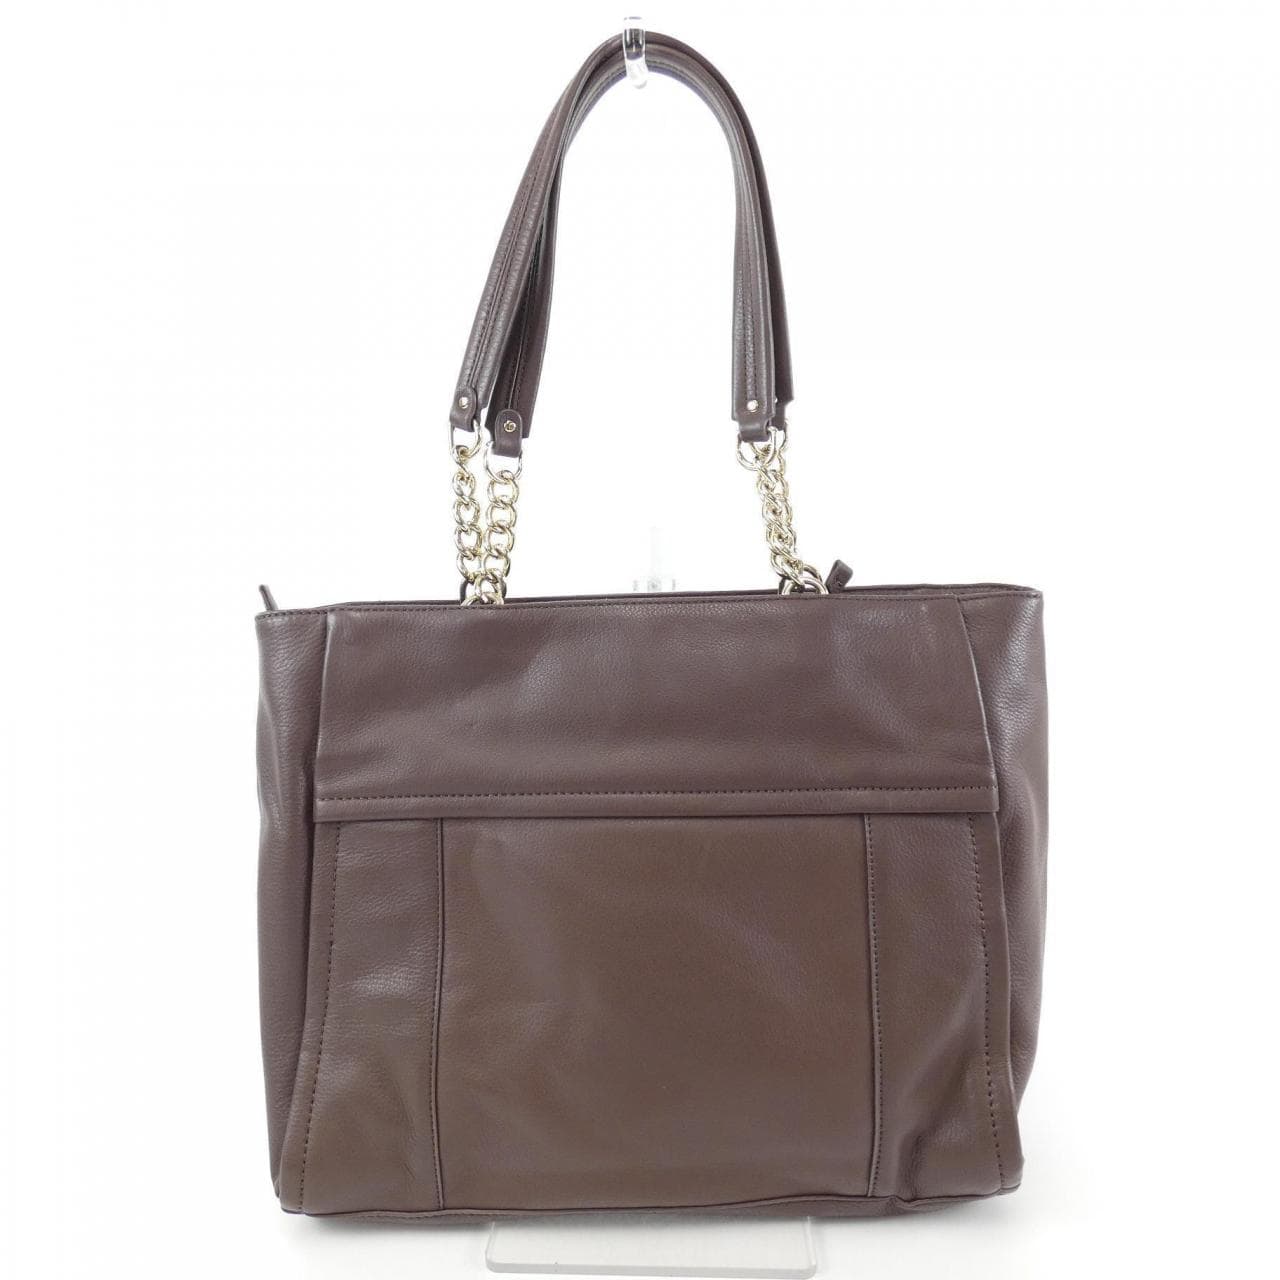 Used Cole Haan Handbags - 5 For Sale on 1stDibs | cole haan bags price, cole  haan purses, cole haan handbags on sale